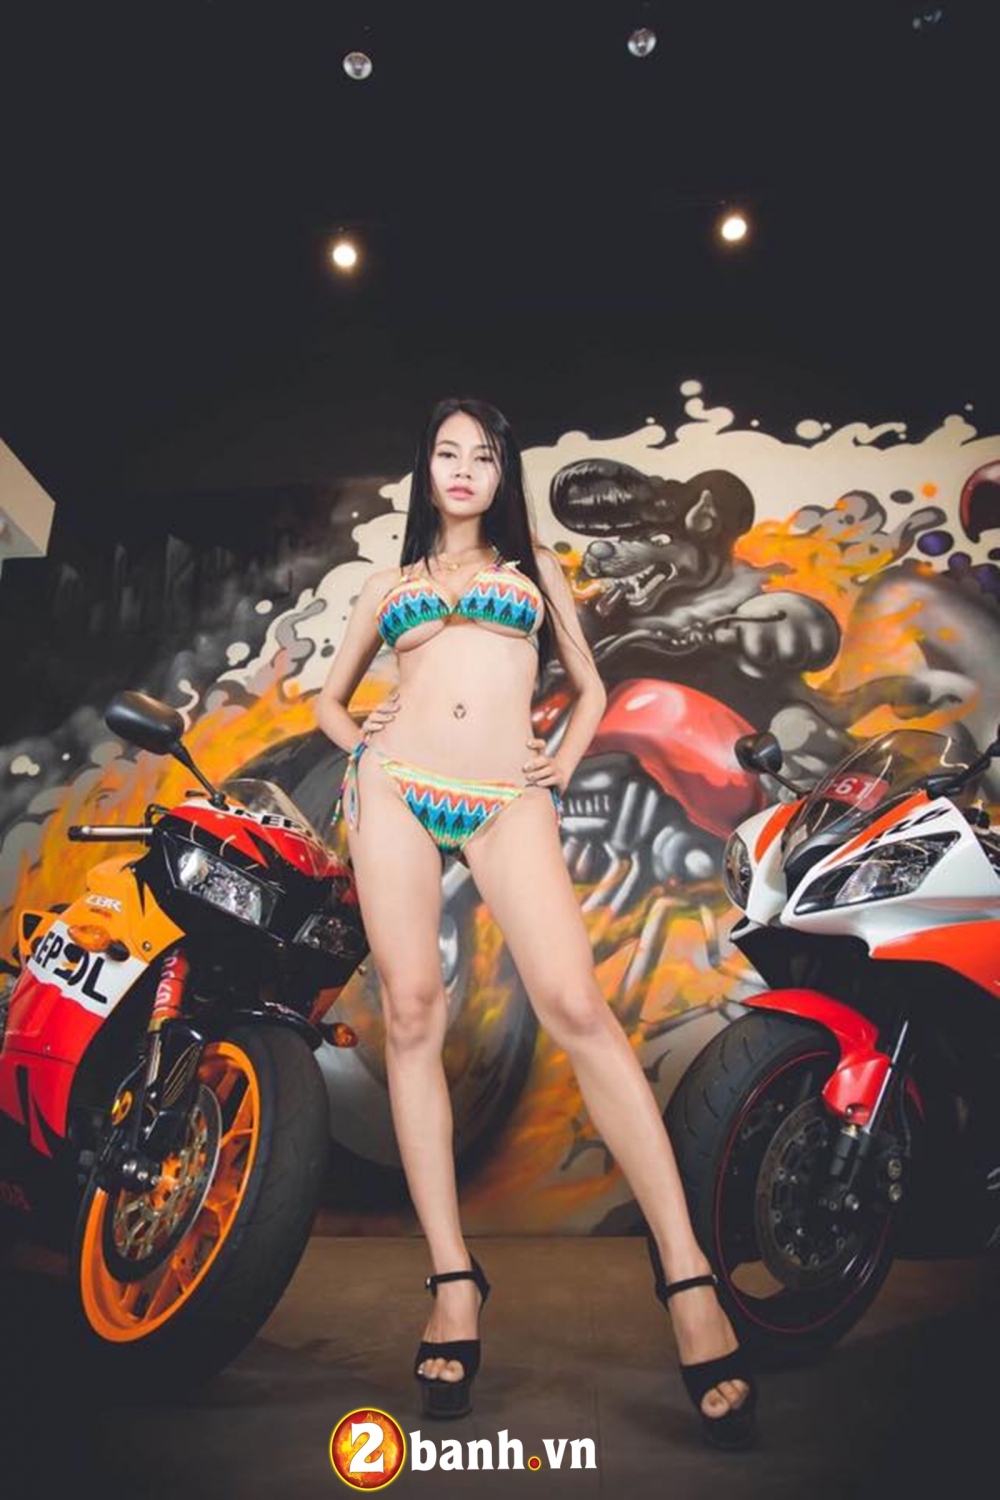 Hot girl nóng bỏng với bikini khoe dáng cạnh cặp đôi moto 600cc